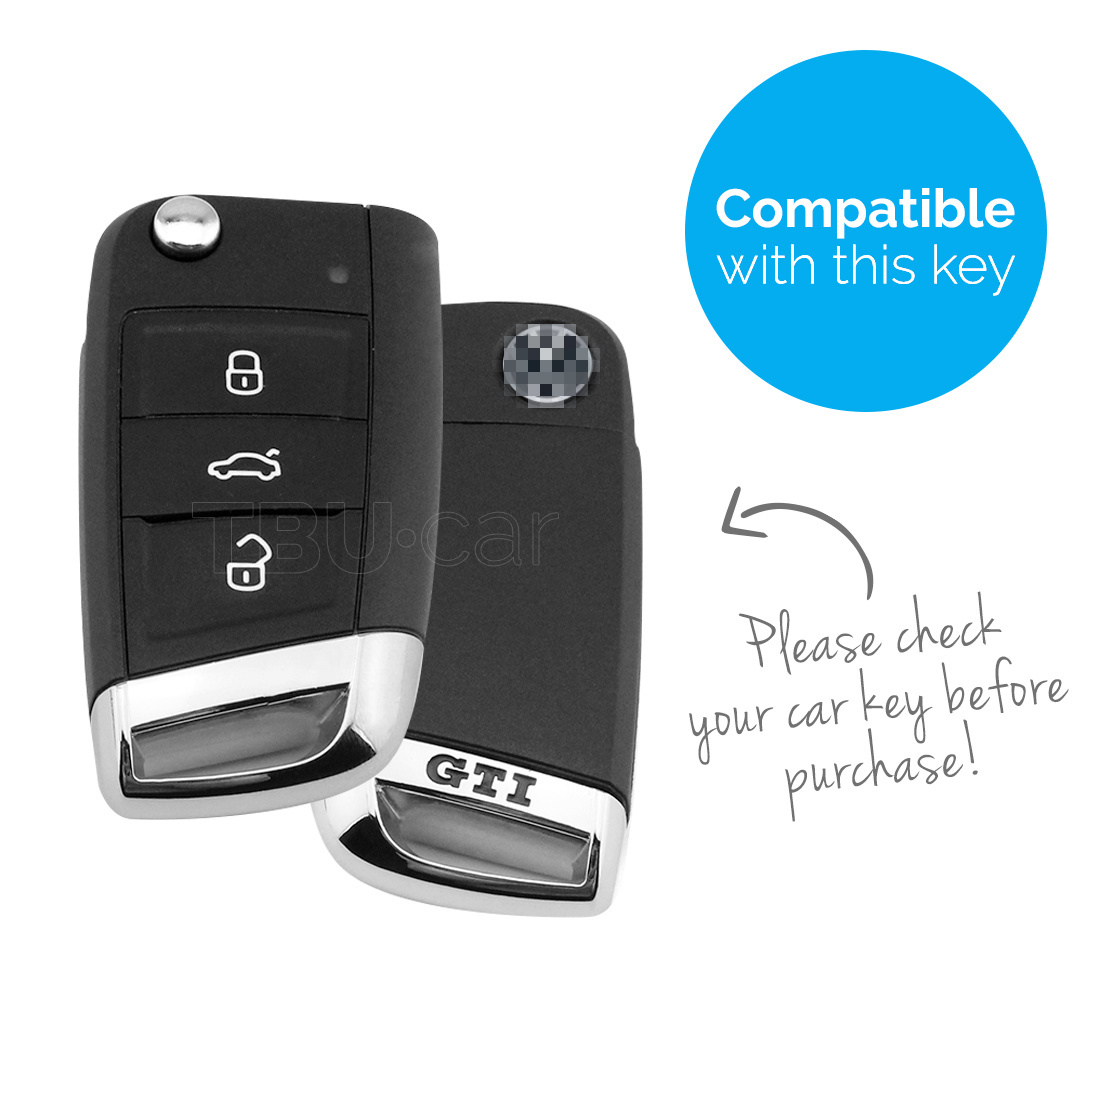 TBU car TBU car Sleutel cover compatibel met VW - Silicone sleutelhoesje - beschermhoesje autosleutel - Lime groen